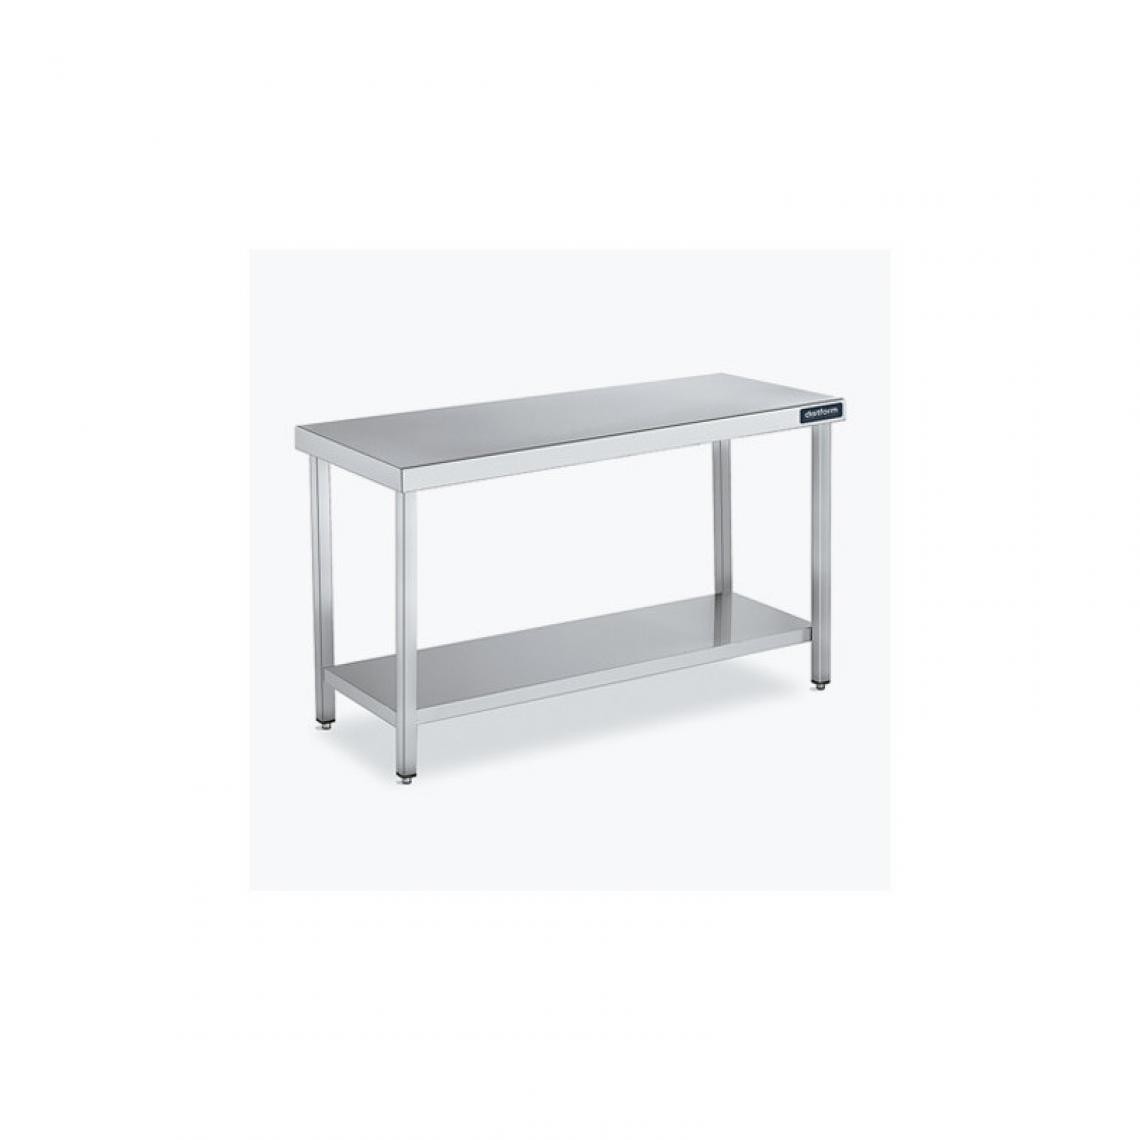 DISTFORM - Table Centrale 600x900 avec Étagère - Distform - Inox 18/10700x900x850mm - Tables à manger